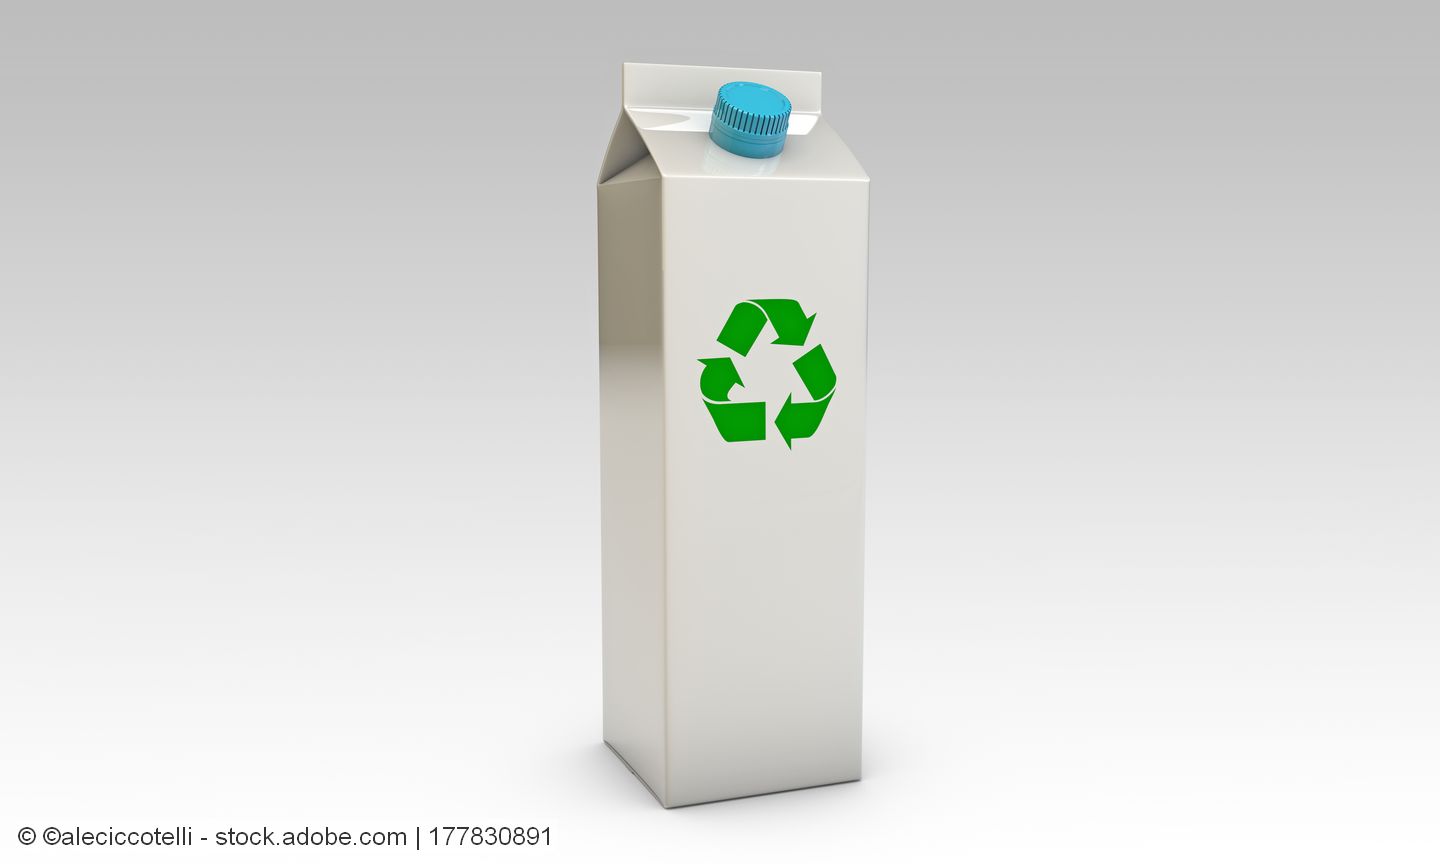 Schweiz: Model Group rüstet Anlage zum Recycling von Getränkekartons auf konventionelles Altpapier um